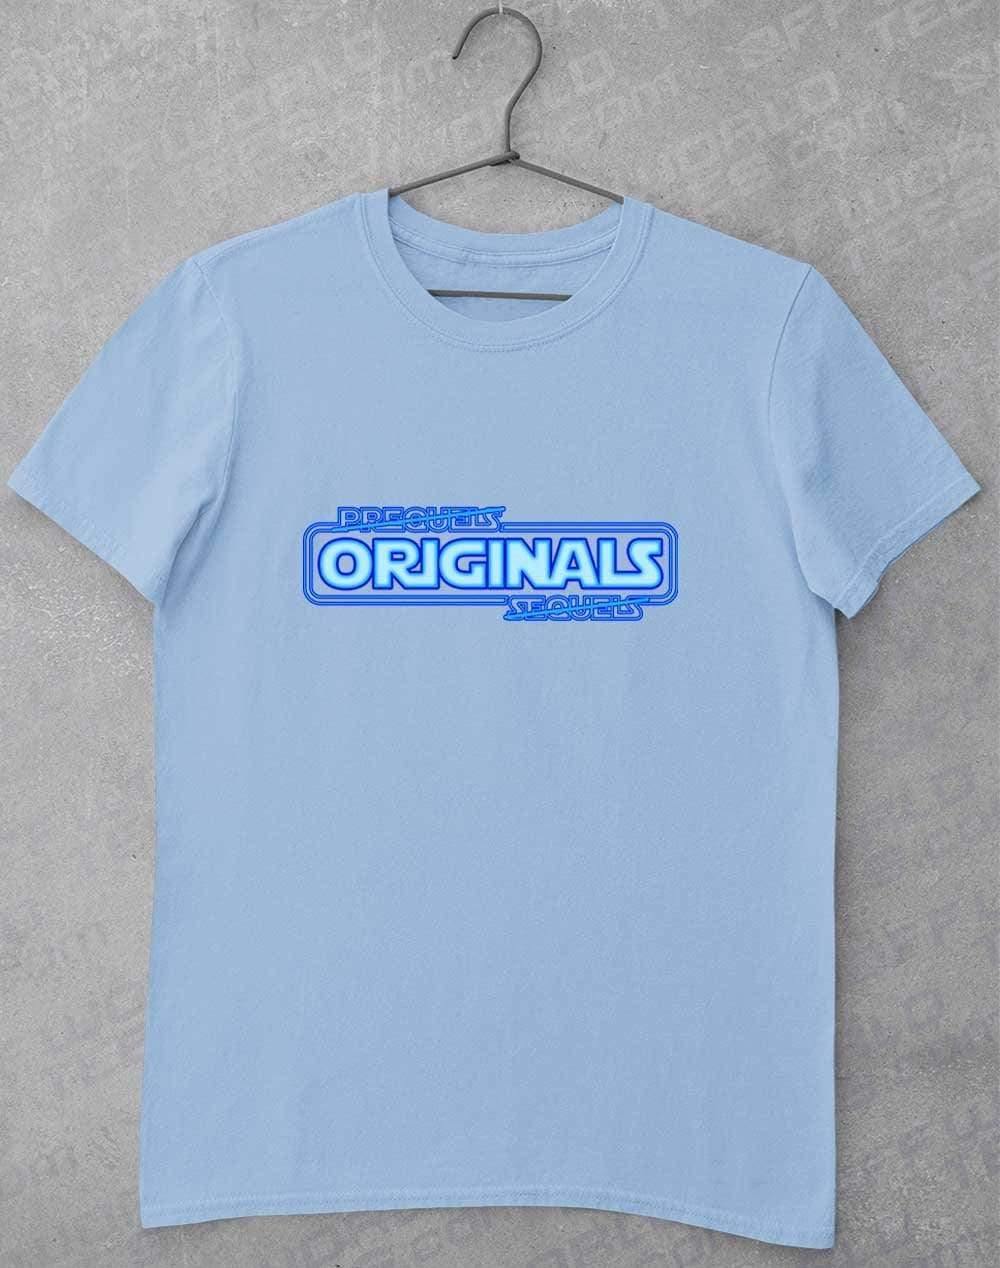 Originals FTW - T-Shirt S / Light Blue  - Off World Tees